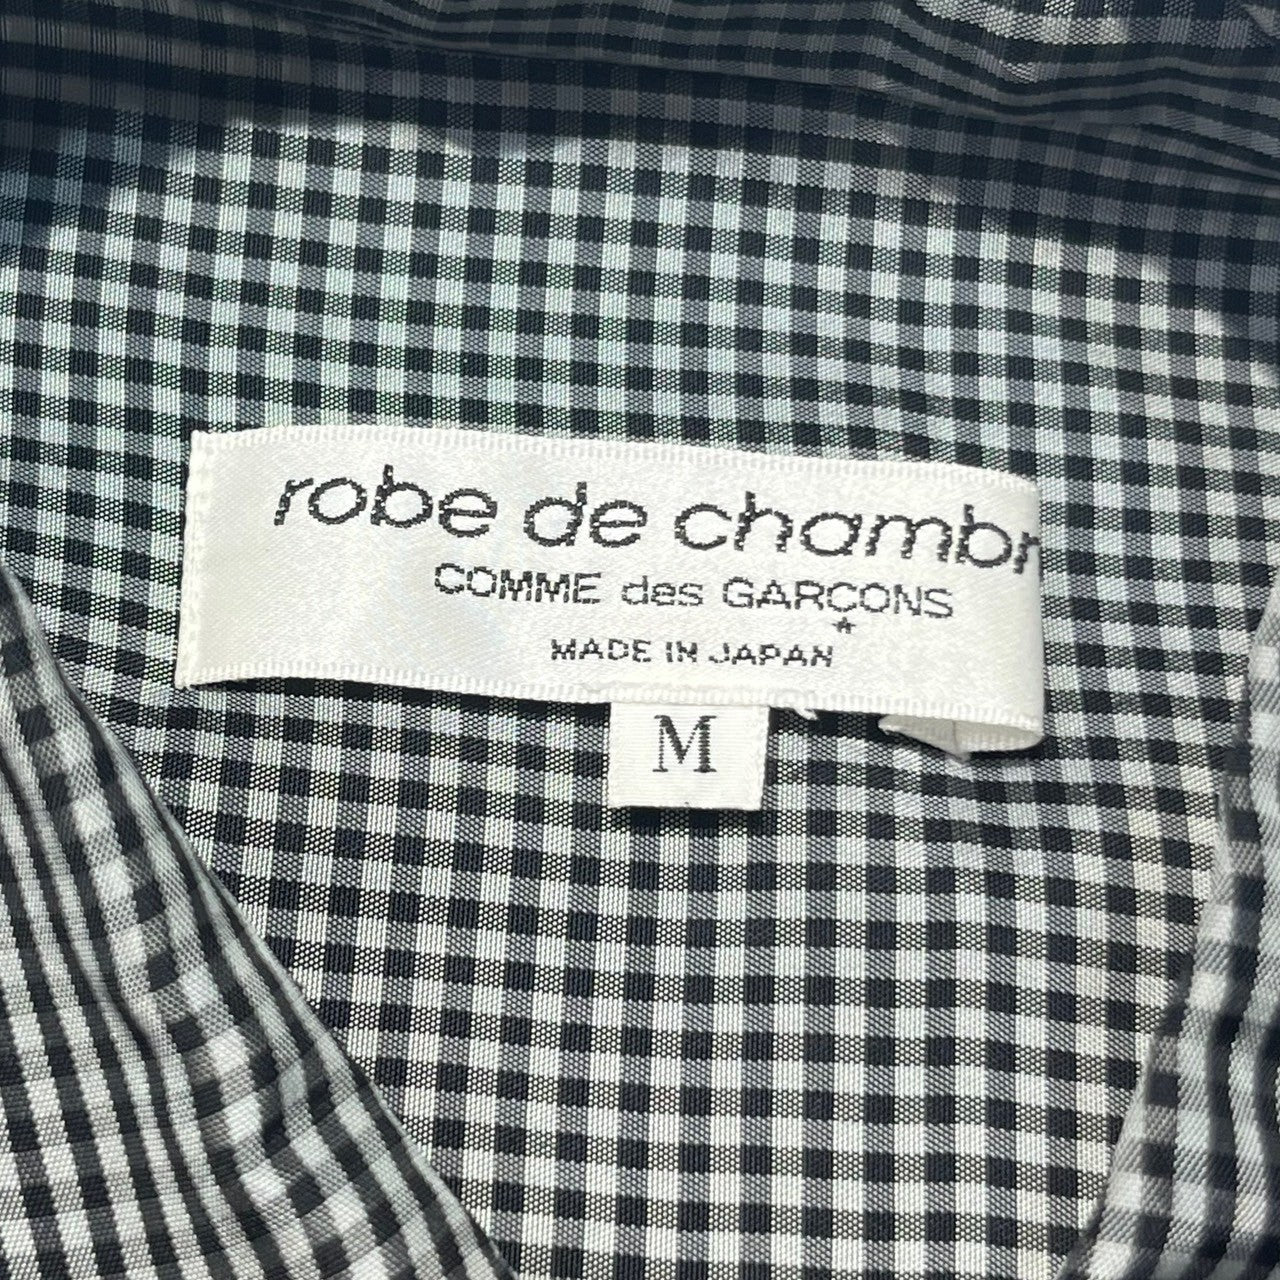 robe de chambre COMME des GARCONS(ローブドシャンブルコムデギャルソン) 02AW Gingham check cupro shirt/ギンガムチェックキュプラシャツ RG-B012 M ブラック×グレー AD2002